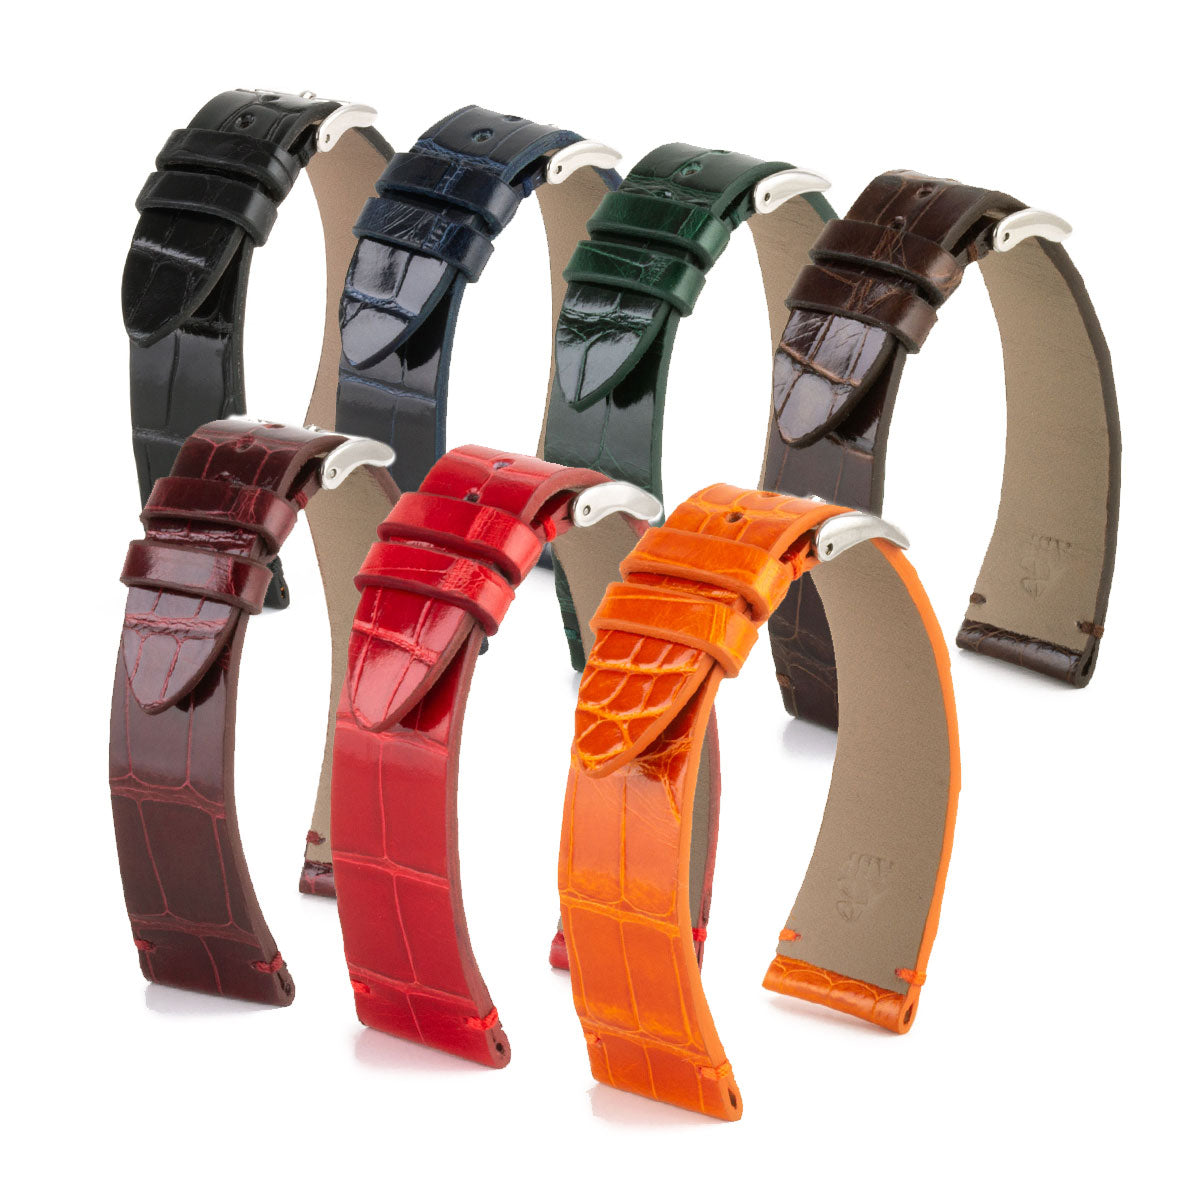 Bracelet "Retro" - Bracelet montre cuir - Alligator brillant (noir, bleu, vert, marron, bordeaux, rouge)